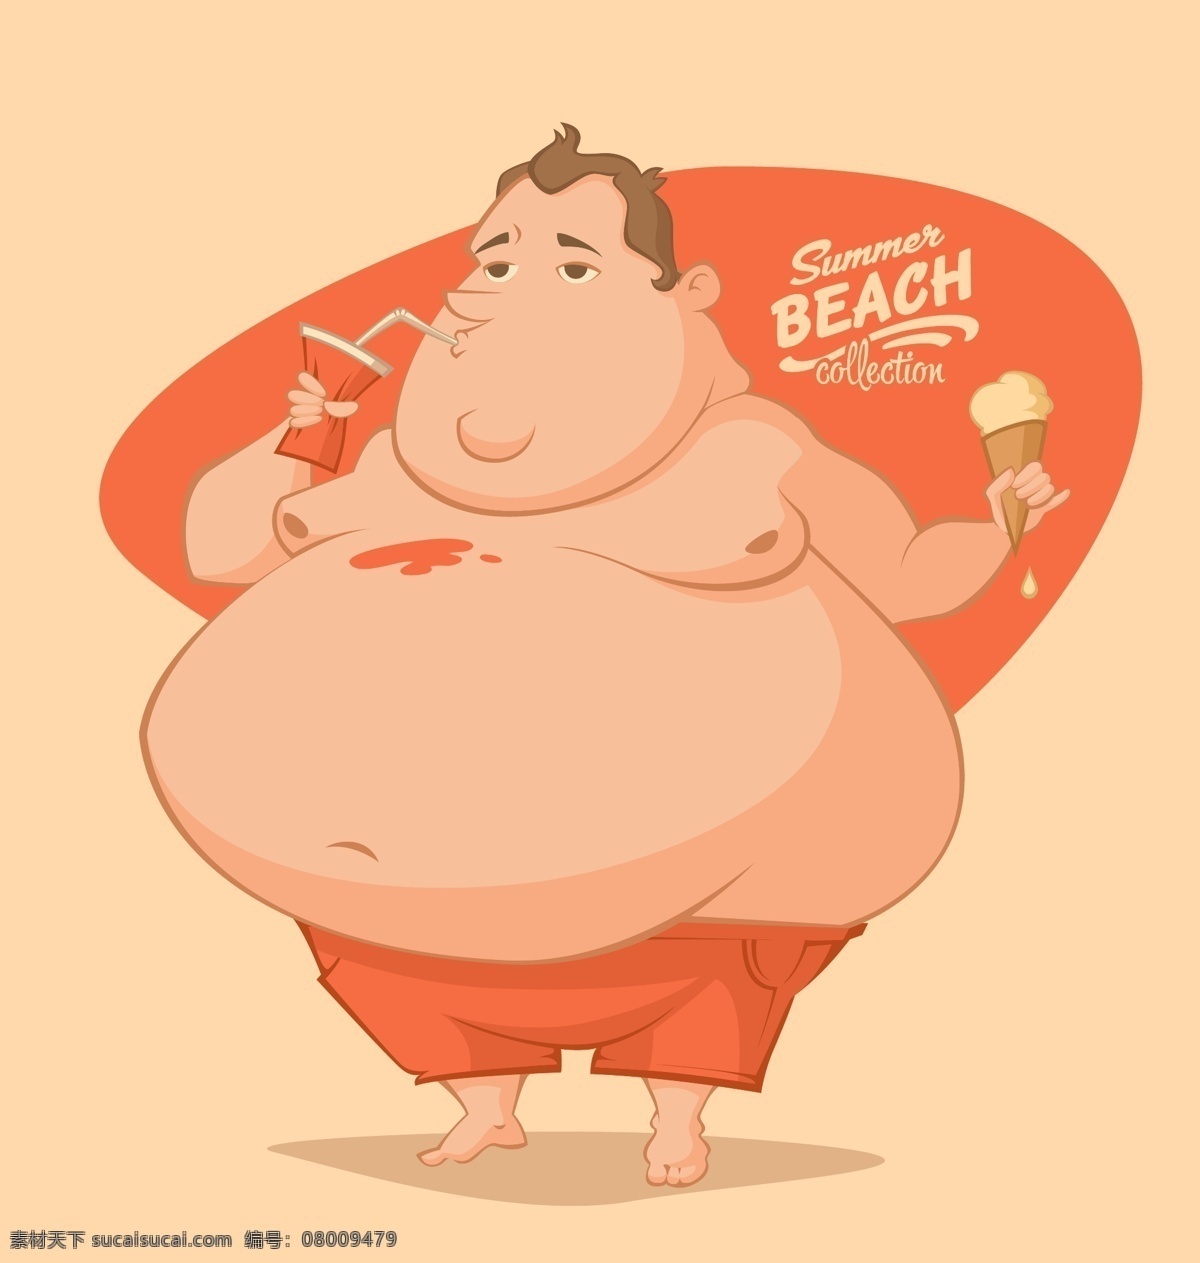 喝 饮料 胖子 插画 卡通画 人物 喝饮料 胖人 肥胖 胖子插画 日常生活 矢量人物 矢量素材